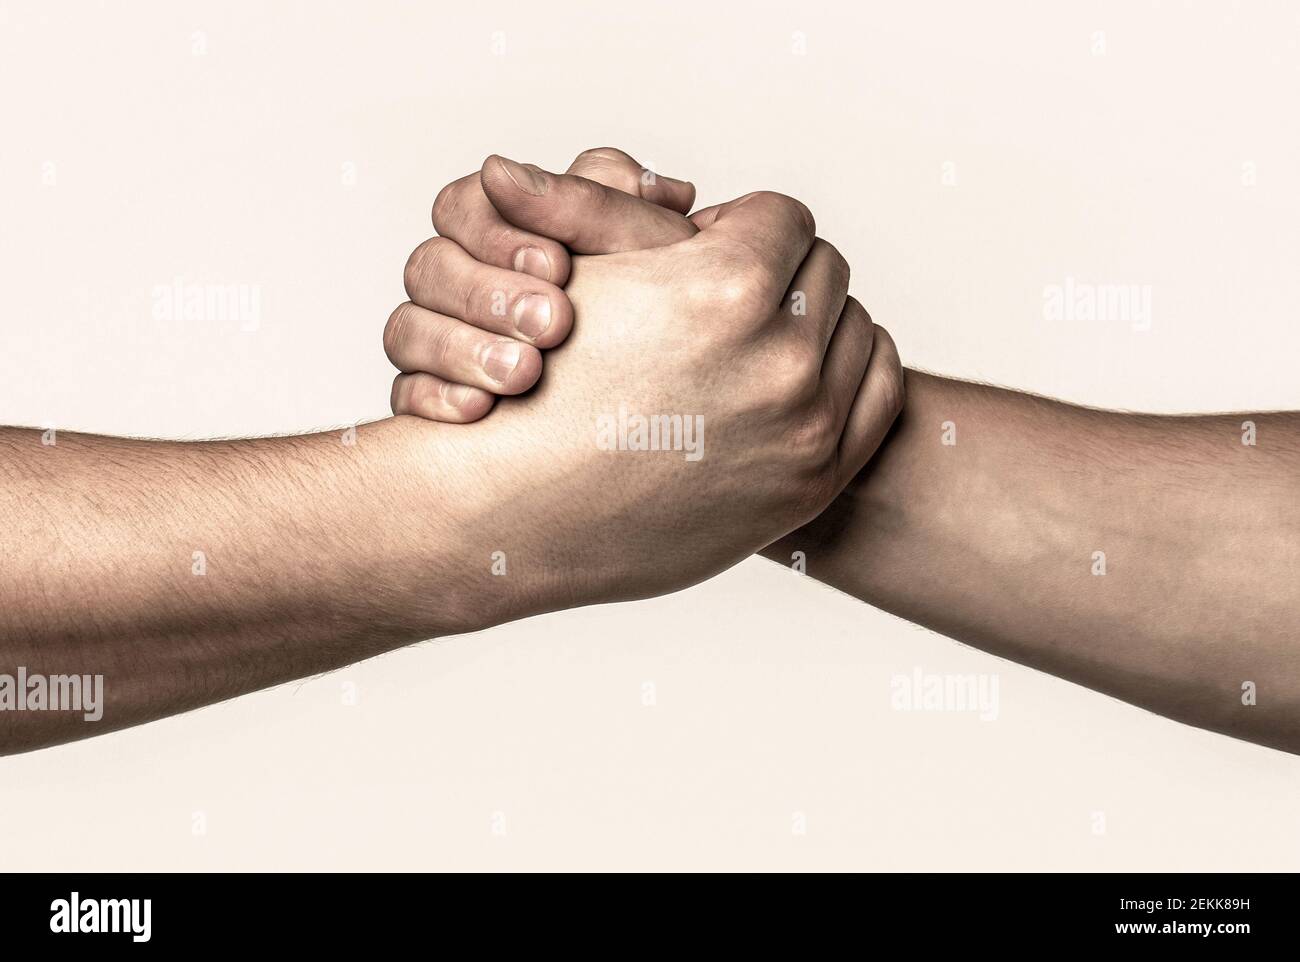 Zwei Hände, helfende Arm eines Freundes, Teamarbeit. Helfende Hand ausgestreckt, isolierter Arm, Erlösung Stockfoto